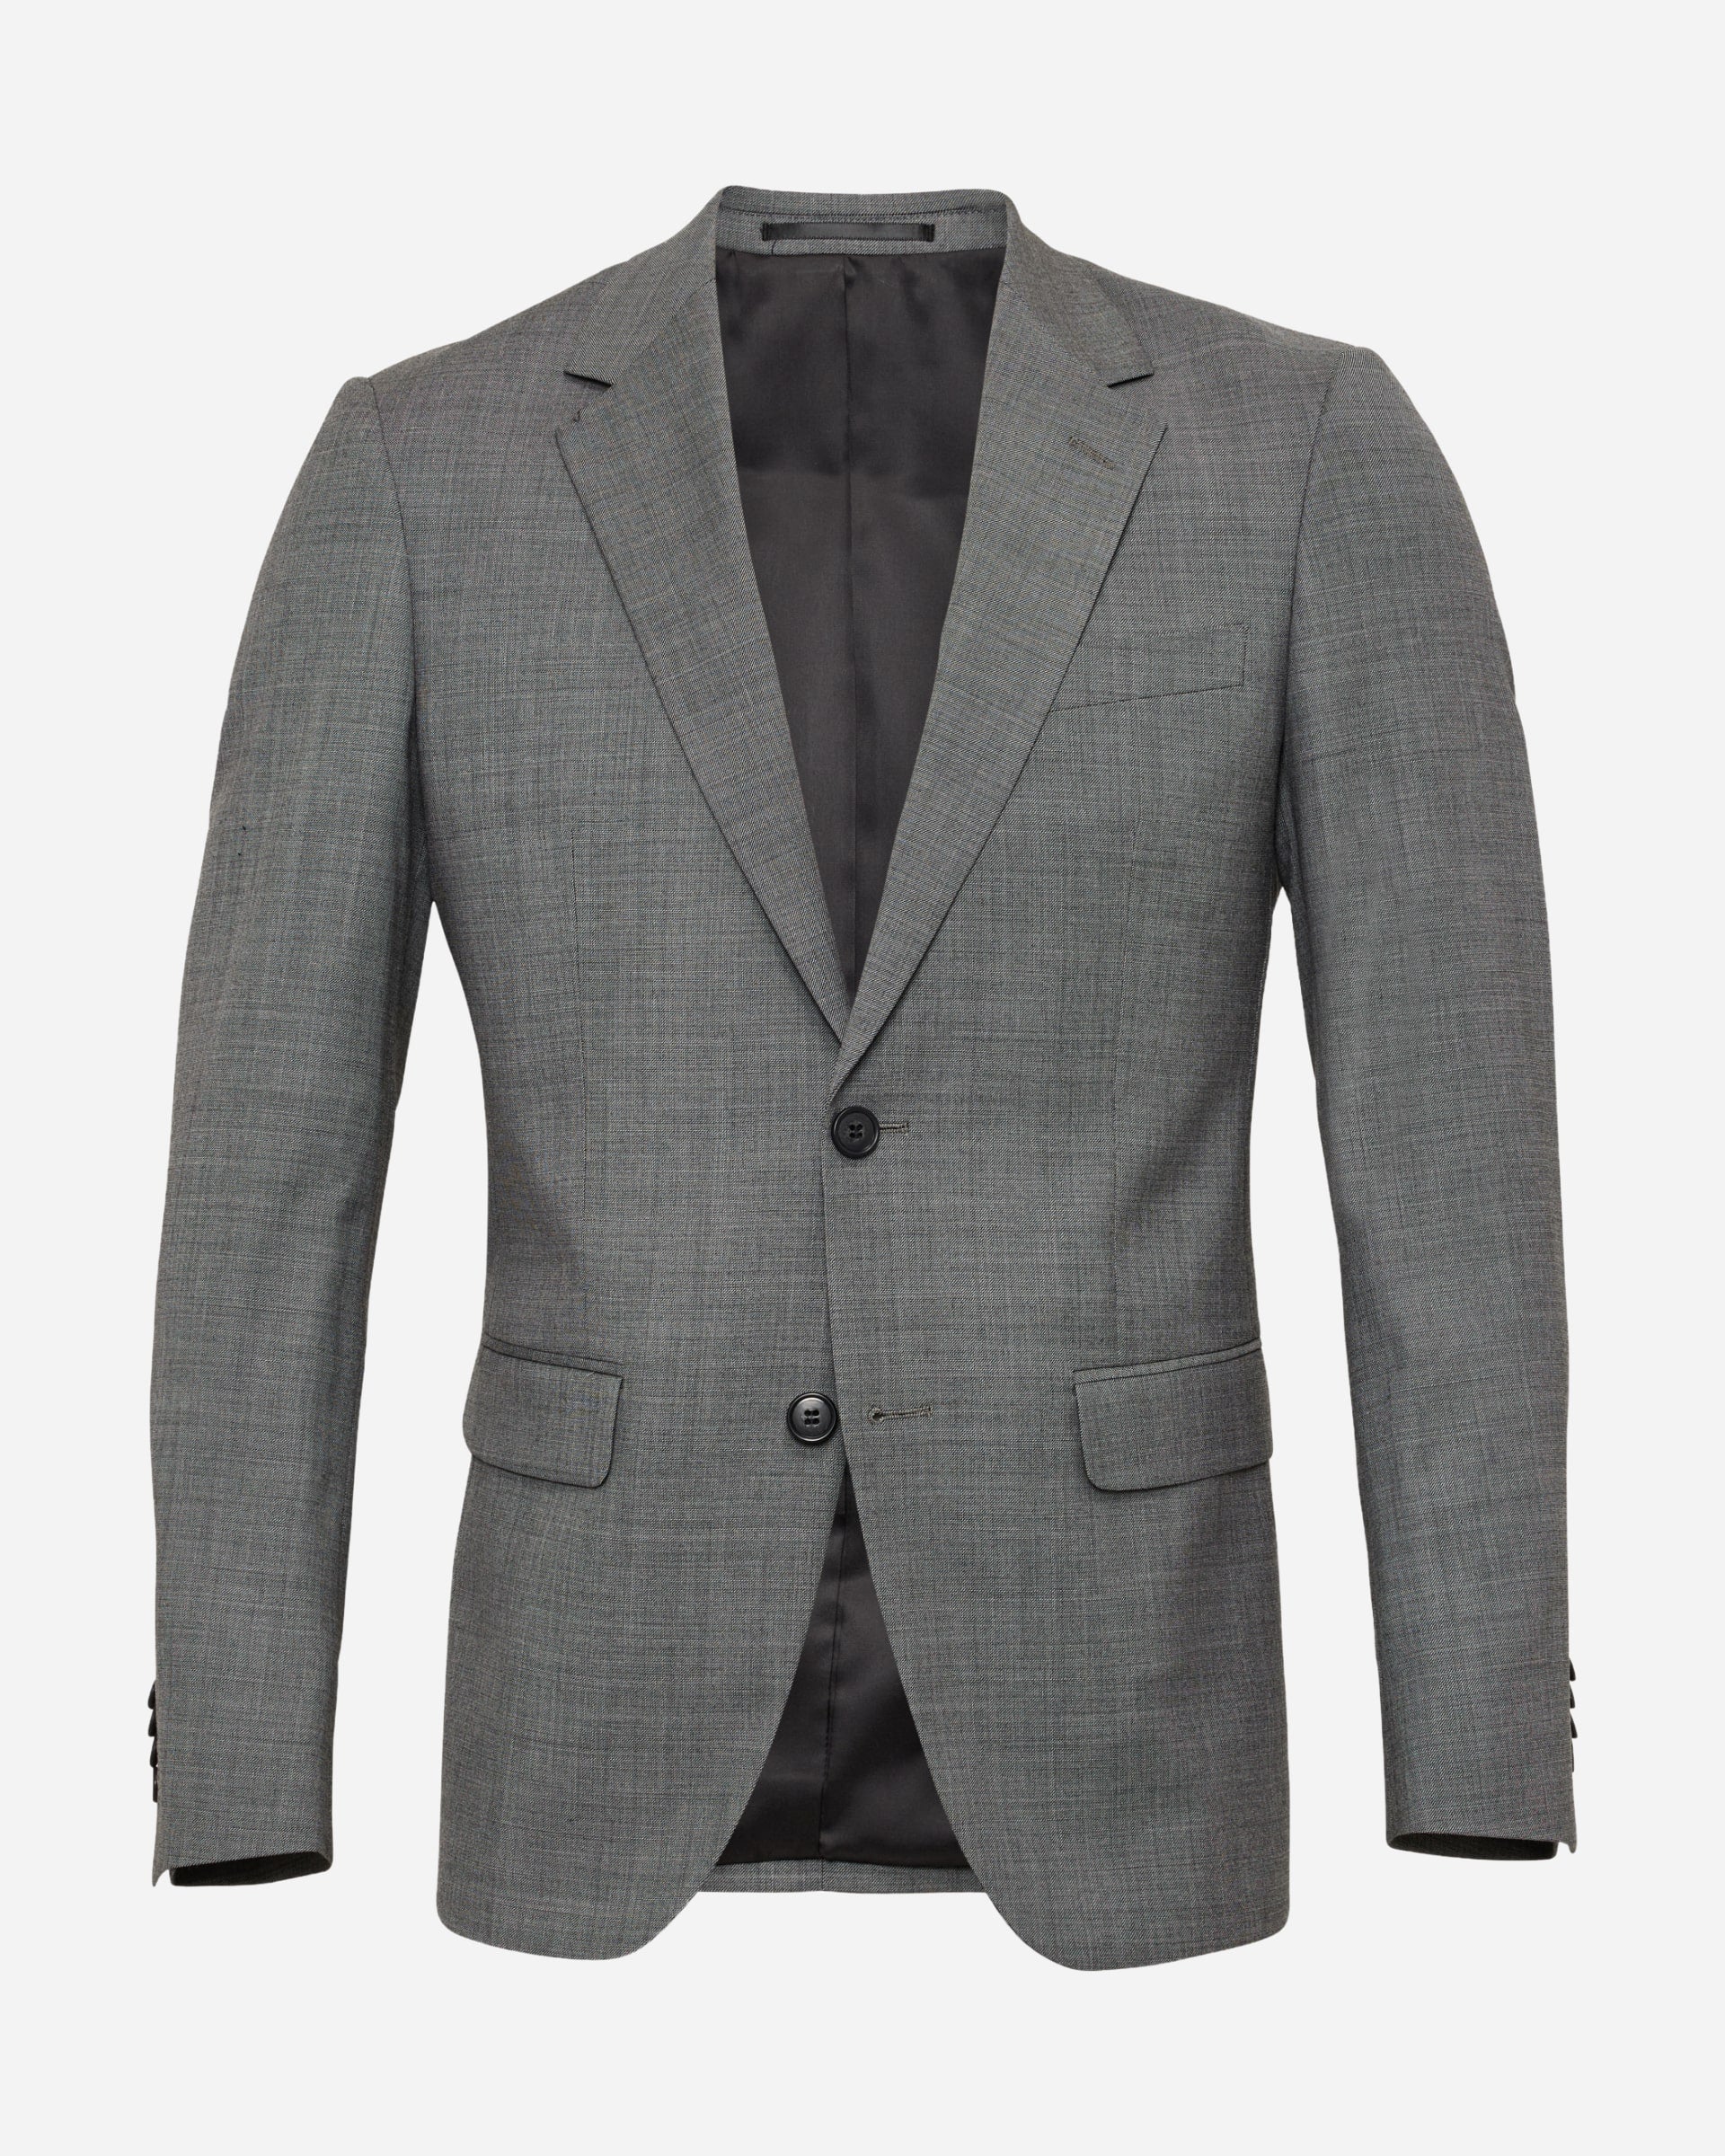 Napoli Grey Suit - Men's Suits at Menzclub